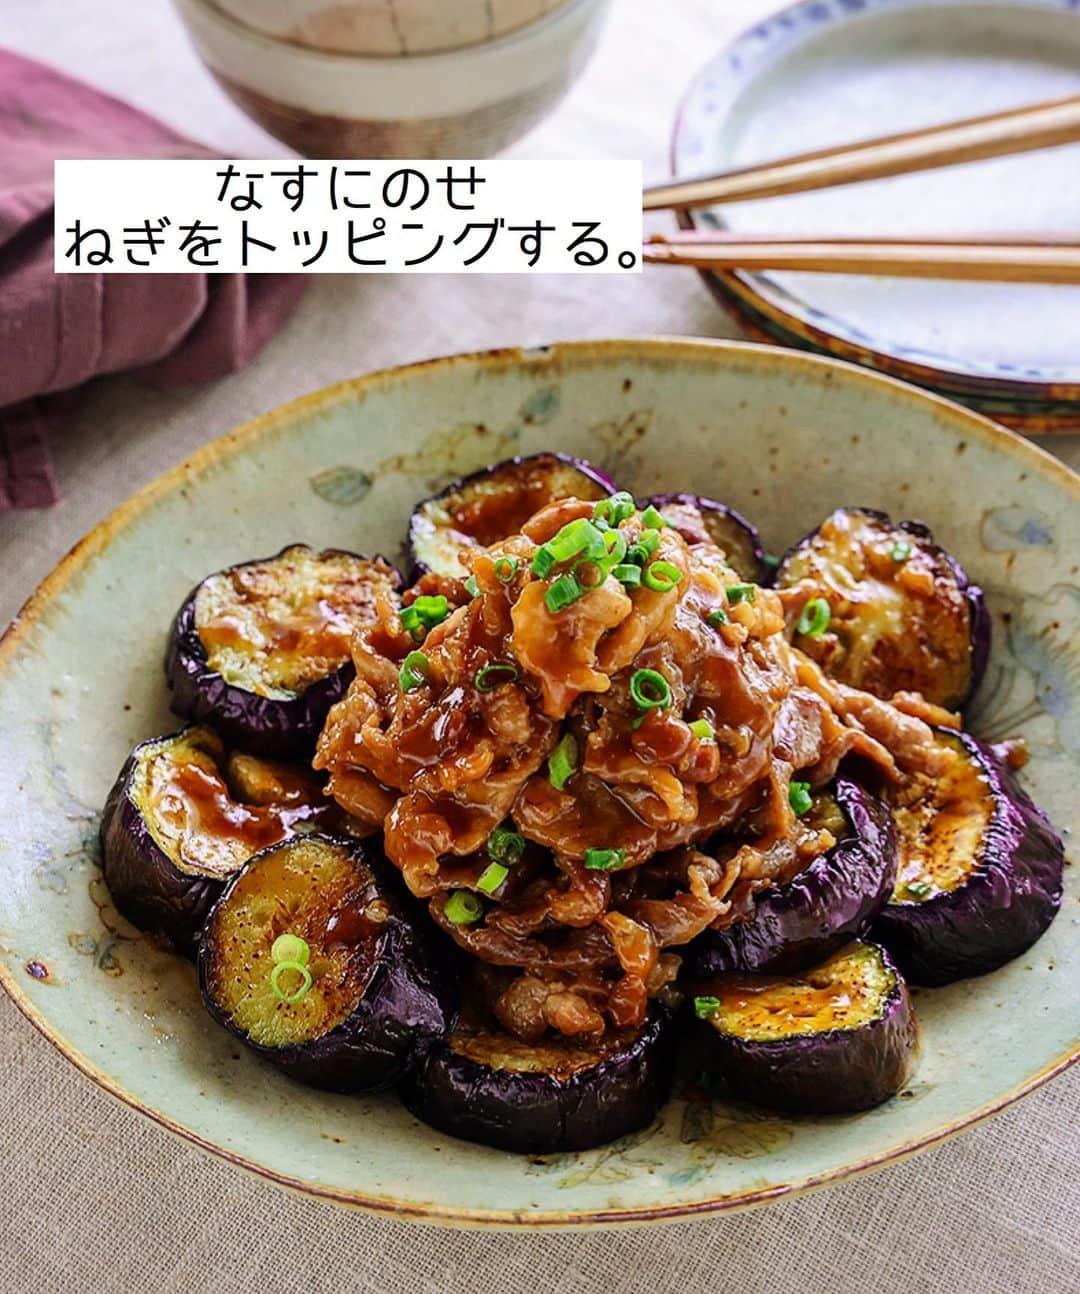 Mizuki【料理ブロガー・簡単レシピ】さんのインスタグラム写真 - (Mizuki【料理ブロガー・簡単レシピ】Instagram)「・ 【#レシピ 】ーーーーーーーーー ♡豚肉のうま照りのっけなす♡ ーーーーーーーーーーーーーーー ⁡ 　 ⁡ おはようございます(*^^*) ⁡ 今日ご紹介させていただくのは \ 豚肉のうま照りのっけなす / ⁡ とろっとジューシーななすに こってり甘辛味の豚肉をのせて ボリューム満点に仕上げました♩ なすは焼くだけ 豚肉は炒めるだけの 超簡単レシピです(*´艸`) ⁡ これ、とってもごはんに合うので よかったらお試し下さいね(*^^*) ⁡ ⁡ ⁡ ＿＿＿＿＿＿＿＿＿＿＿＿＿＿＿＿＿＿＿＿＿ 【2人分】 なす...2本 豚こま切れ肉...200g 塩こしょう...少々 薄力粉...大1 サラダ油・ごま油...各大1 ●醤油・酒・みりん...各大1.5 ●砂糖...大1 ●生姜チューブ...2cm 万能ねぎ...適量 ⁡ 1.なすは1.5cm幅の輪切りにし、水に晒して水気を切る。豚肉は塩こしょうと薄力粉をまぶす。●は合わせておく。 2.フライパンにサラダ油とごま油を入れて中火で熱し、なすを返しながら4分程焼いて器に盛る。 3.そのままのフライパンで豚肉を炒め、火が通ったら●を加えて煮からめる。なすにのせ、ねぎをトッピングする。 ￣￣￣￣￣￣￣￣￣￣￣￣￣￣￣￣￣￣￣￣￣ ⁡ ⁡ ⁡ 《ポイント》 ♦︎工程3で豚肉を炒める時、必要であれば(ほぐれにくければ)サラダ油を少し加えて下さい♩ ⁡ ⁡ ⁡ ⁡ ⁡ ⁡ ⁡ ⁡ \ 新刊予約開始しました /(9月24日発売) ⁡ 🔹🔹🔹🔹🔹🔹🔹🔹🔹🔹🔹🔹 今日のごはんこれに決まり！ #Mizukiのレシピノート 決定版 500品 🔹🔹🔹🔹🔹🔹🔹🔹🔹🔹🔹🔹 ⁡ 総レシピ6000点の中からレシピを厳選！ まさかの【500レシピ掲載】しました⭐️ (もはや辞典...) ⁡ 肉や魚のメインおかずはもちろん 副菜、丼、麺、スープ、お菓子 ハレの日のレシピ、鍋のレシピまで 全てこの一冊で完結！！ ⁡ ⁡ 🎁新刊予約でエプロンが当たる🎁 プレゼントキャンペーン実施中 ￣￣￣￣￣￣￣￣￣￣￣￣￣￣￣￣￣￣￣￣￣ 【応募方法】 ❶1枚目に表紙画像 2枚目にAmazonで予約したことがわかる画像 (どちらもスクショでOK)を貼りつける。 ❷ハッシュタグ【#Mizukiのレシピノート 】 をつけて投稿！ ￣￣￣￣￣￣￣￣￣￣￣￣￣￣￣￣￣￣￣￣￣￣ ⁡ ⁡ ⁡ ⁡ ⁡ ＿＿＿＿＿＿＿＿＿＿＿＿＿＿＿＿ 🟥YouTube 料理動画配信中🟥 ￣￣￣￣￣￣￣￣￣￣￣￣￣￣￣￣ 料理とお菓子の簡単レシピを ご紹介しています☺️💓 ⁡ 【奇跡のキッチン】で検索🔍 (ハイライトからも飛べます✨) ￣￣￣￣￣￣￣￣￣￣￣￣￣￣￣￣ ⁡ ⁡ ⁡ ＿＿＿＿＿＿＿＿＿＿＿＿＿＿＿＿ 🔶🔶recipe book🔶🔶 ￣￣￣￣￣￣￣￣￣￣￣￣￣￣￣￣ ホケミレシピの決定版♩ \はじめてでも失敗しない/ 📙#ホットケーキミックスのお菓子 ⁡ NHKまる得マガジンテキスト☆ #ホットケーキミックス で ⁡ 📗絶品おやつ&意外なランチ ⁡ しんどくない献立、考えました♩ \𝟣𝟧分でいただきます/ 📕#Mizukiの2品献立 ⁡ 和食をもっとカジュアルに♩ \毎日のごはんがラクになる/ 📘#Mizukiの今どき和食  ＿＿＿＿＿＿＿＿＿＿＿＿＿＿＿＿＿ ⁡ ⁡ ⁡ ⁡ #豚肉のうま照りのっけなすm #豚こま #なす #夏野菜 #mizuki #簡単レシピ #時短レシピ #節約レシピ #料理 #料理初心者  #時短ごはん #節約ごはん #フーディーテーブル #おうちごはん #デリスタグラマー #おうちごはんlover #料理好きな人と繋がりたい #写真好きな人と繋がりたい #foodpick#cooking#recipe #𝗅𝗂𝗇_𝗌𝗍𝖺𝗀𝗋𝖺𝗆𝗆𝖾𝗋#foodporn」8月22日 8時05分 - mizuki_31cafe